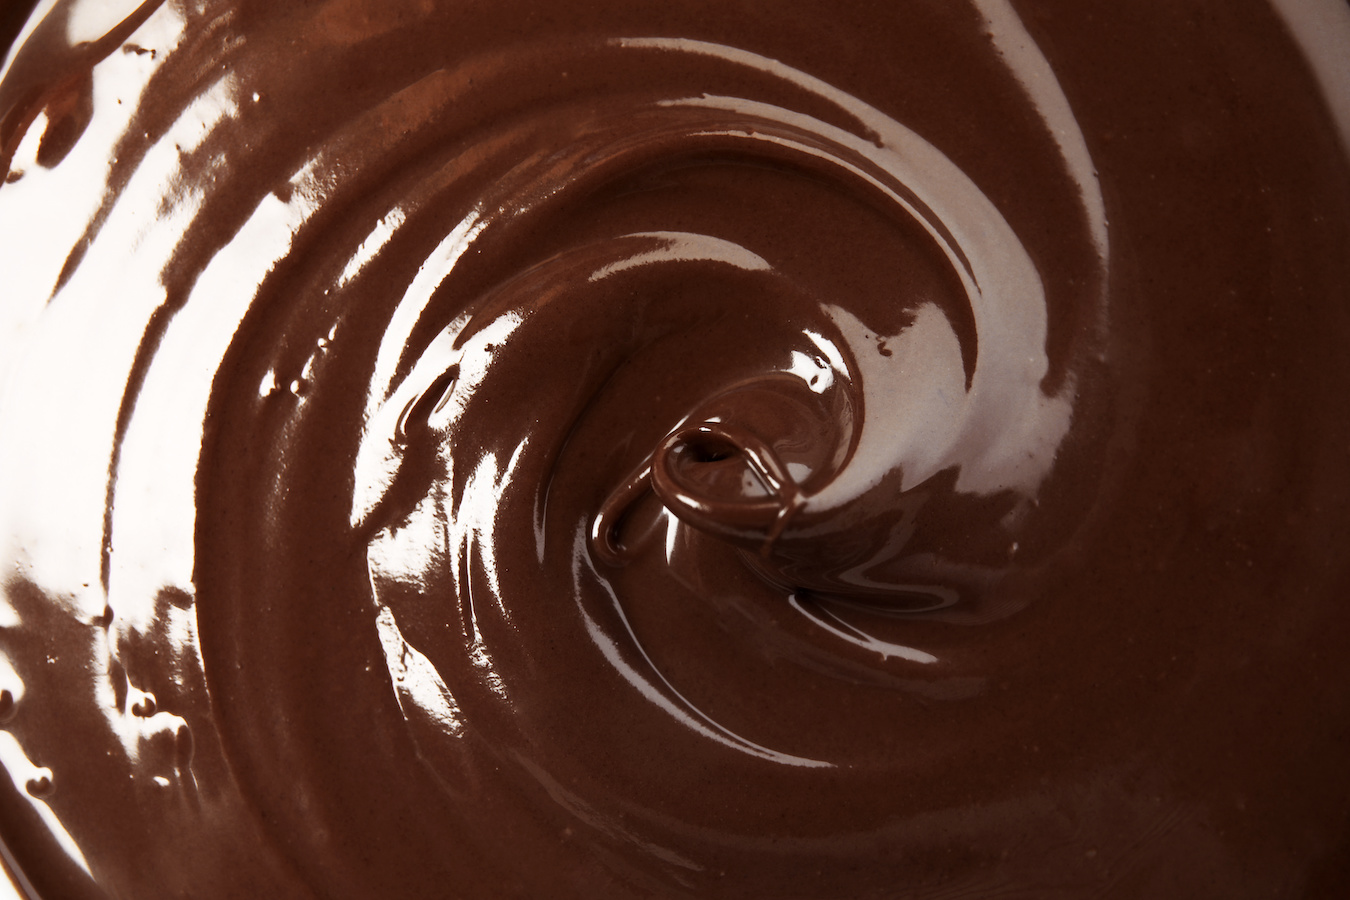 Mousse de Chocolate preto muito fácil de preparar e com um sabor incrível